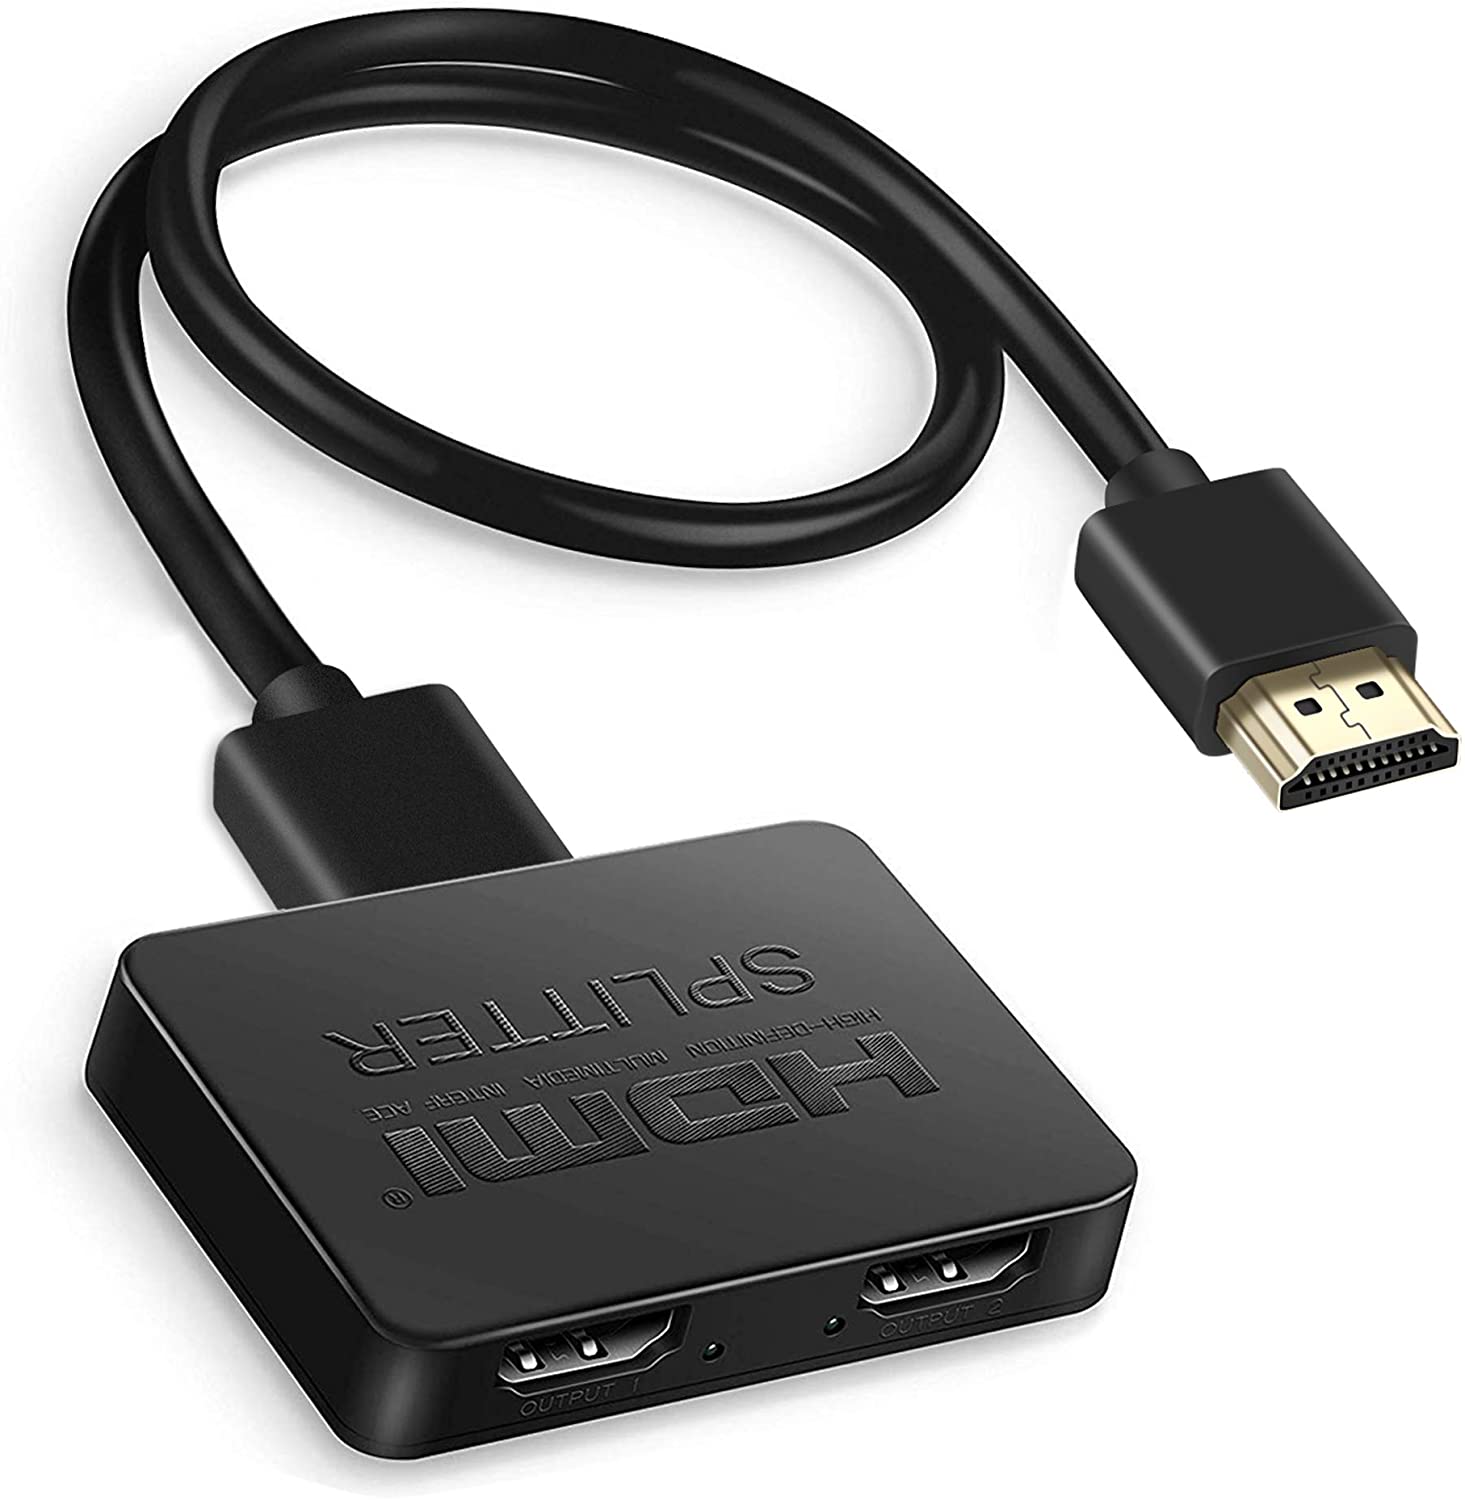 HDMIスプリッター 1入力2出力 HDMI分配器/ケーブル・アクセサリー | パンダスタジオ・レンタル公式サイト